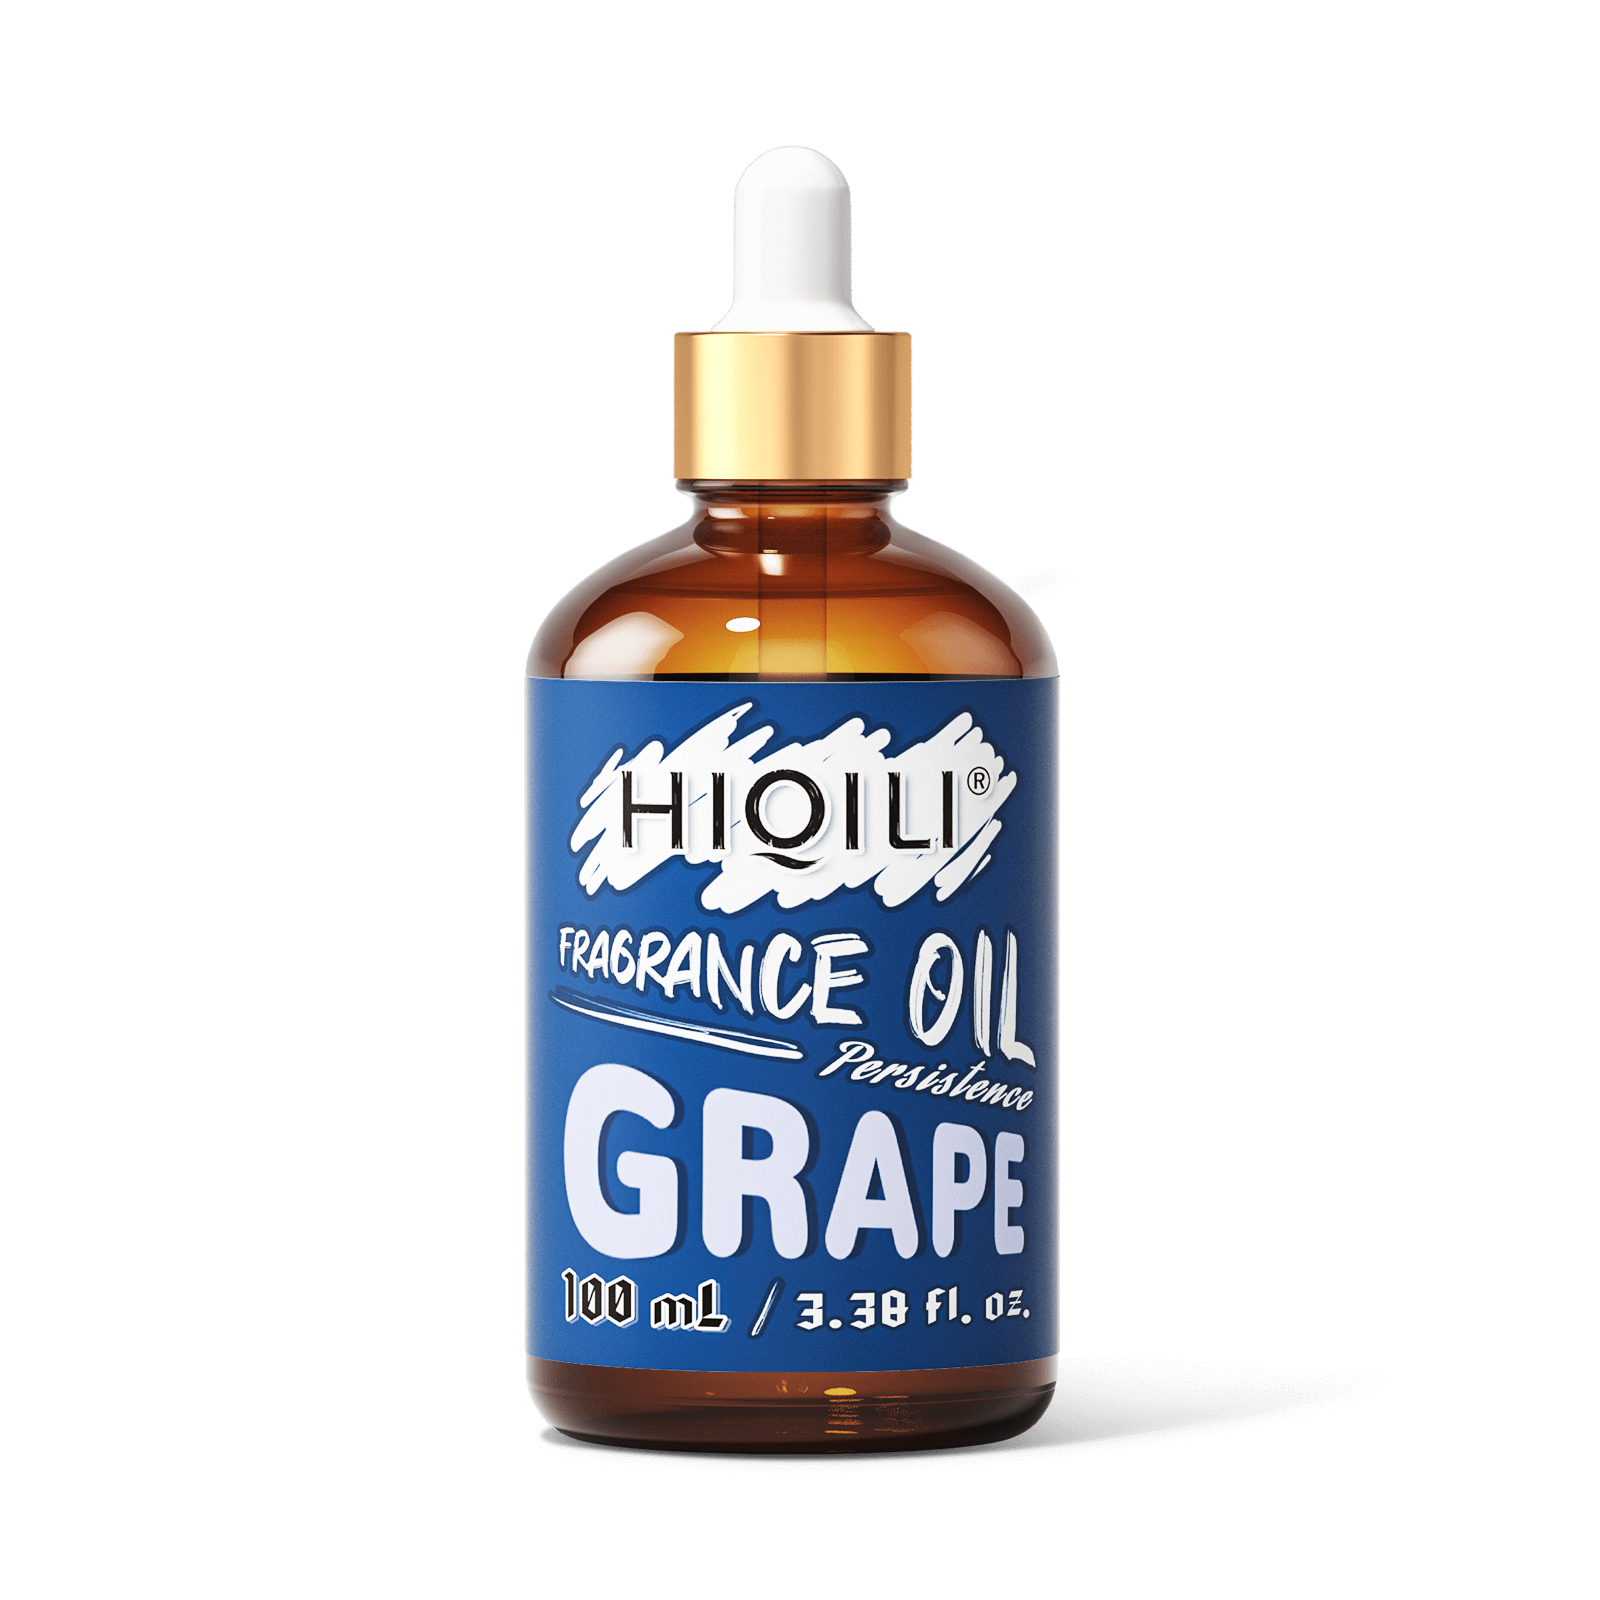 Grape Fragrance Oil